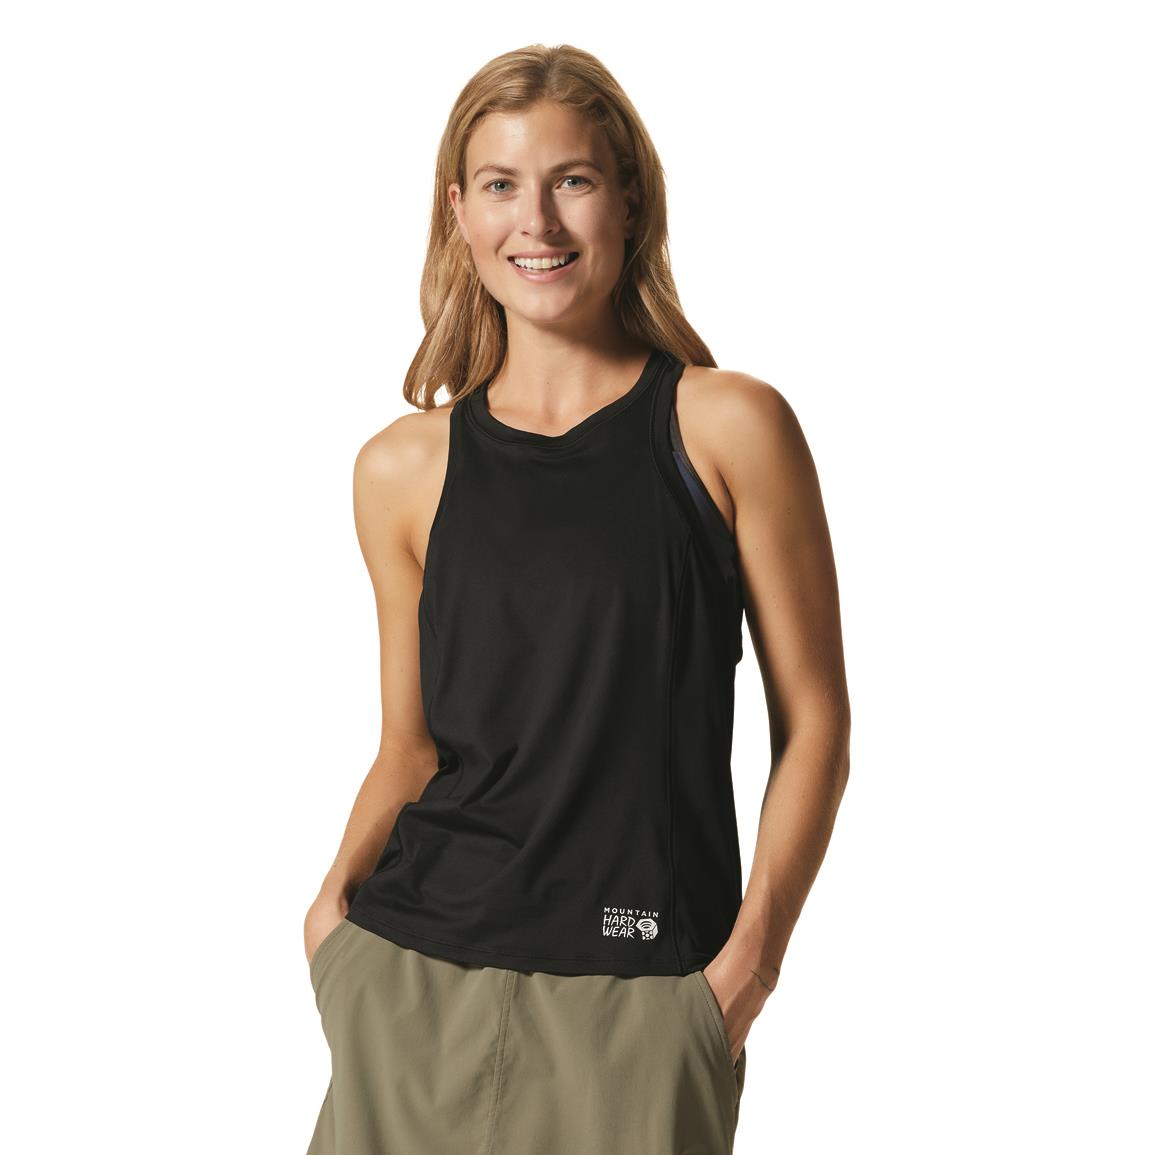 Mountain Hardwear Women's Crater Lake Tank Top, Black